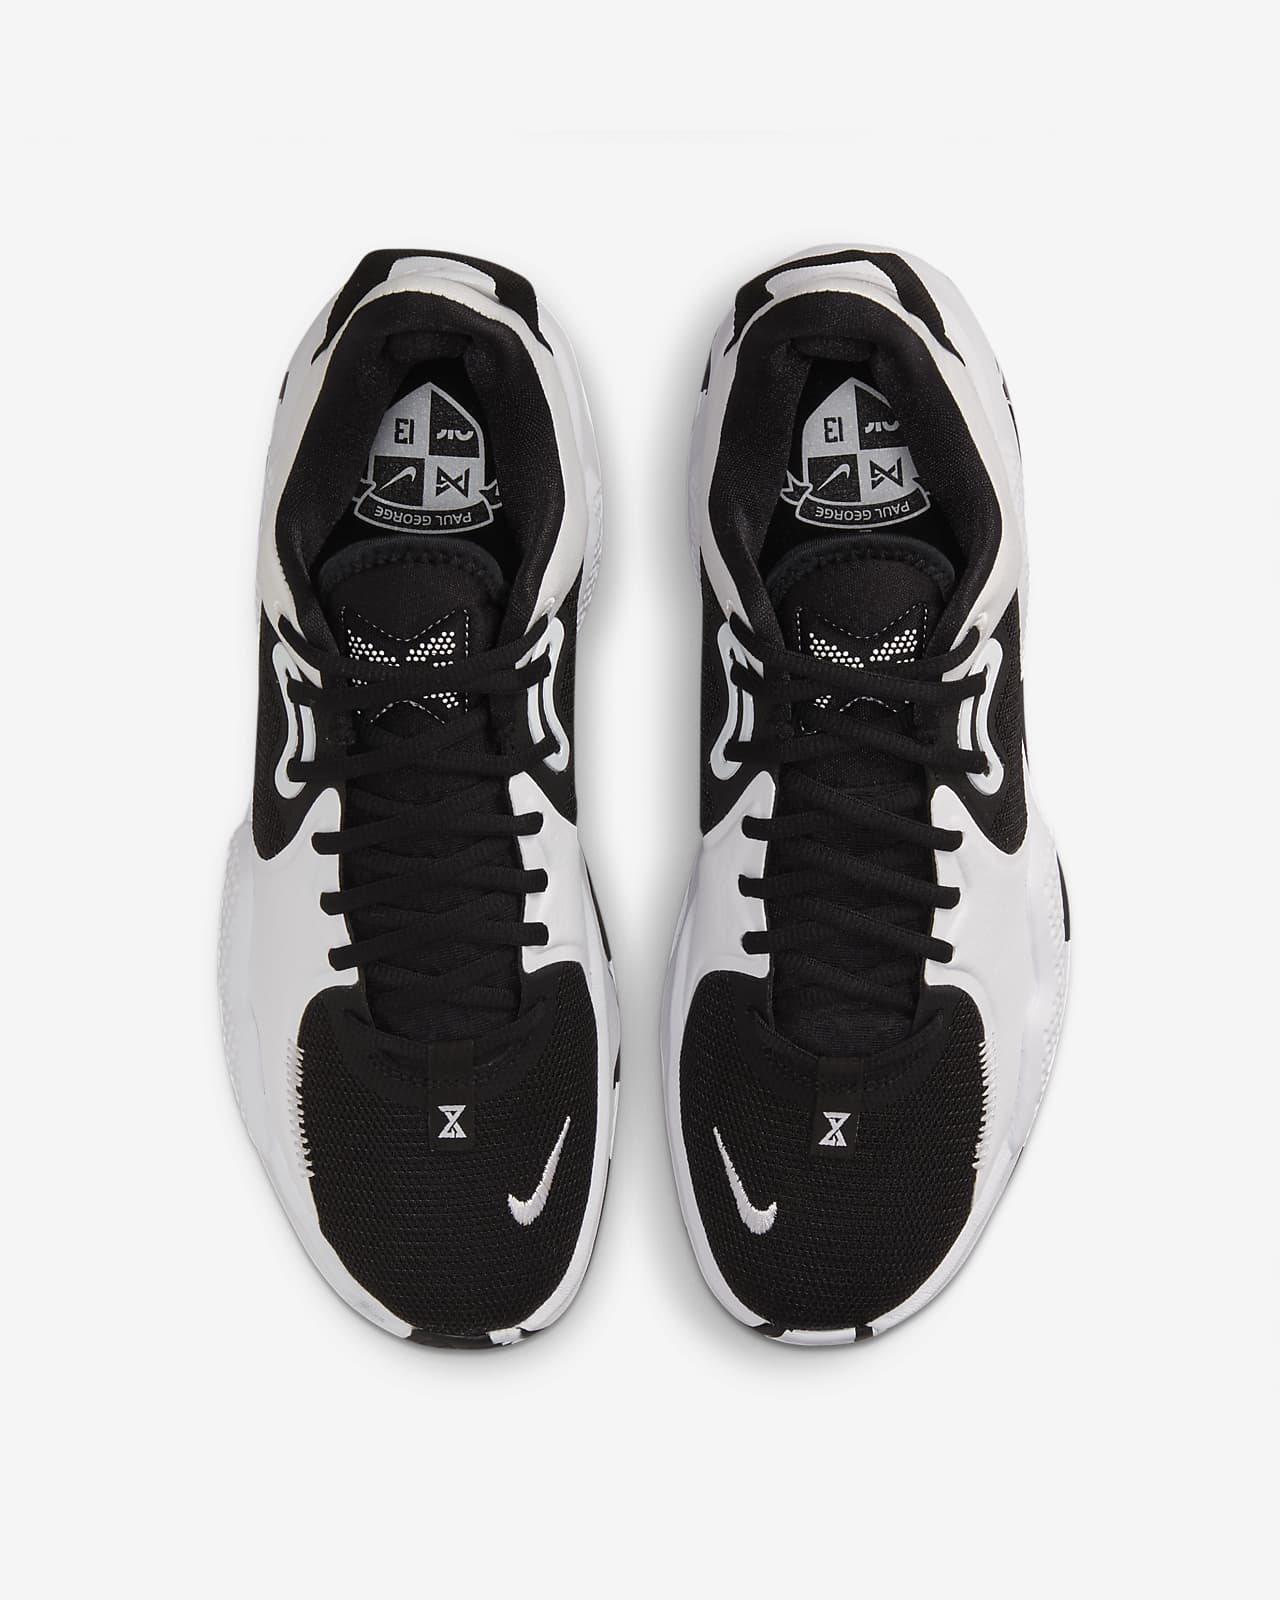 PG 5 (Team) Basketball Shoes. Nike.com